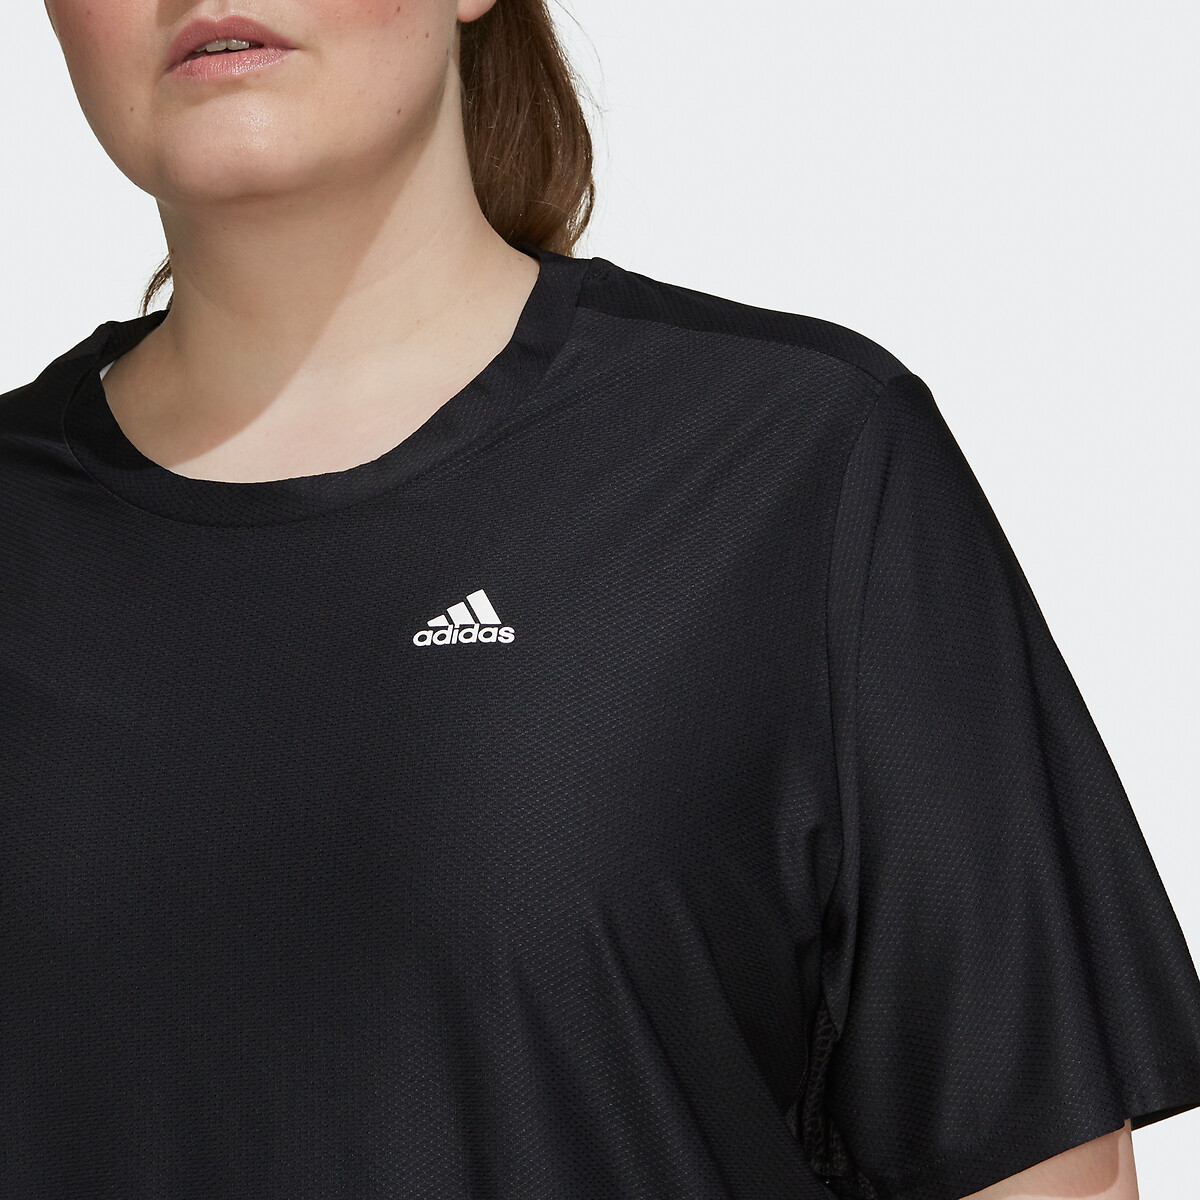 trolebús Especial reducir Camiseta de running negro Adidas Performance | La Redoute